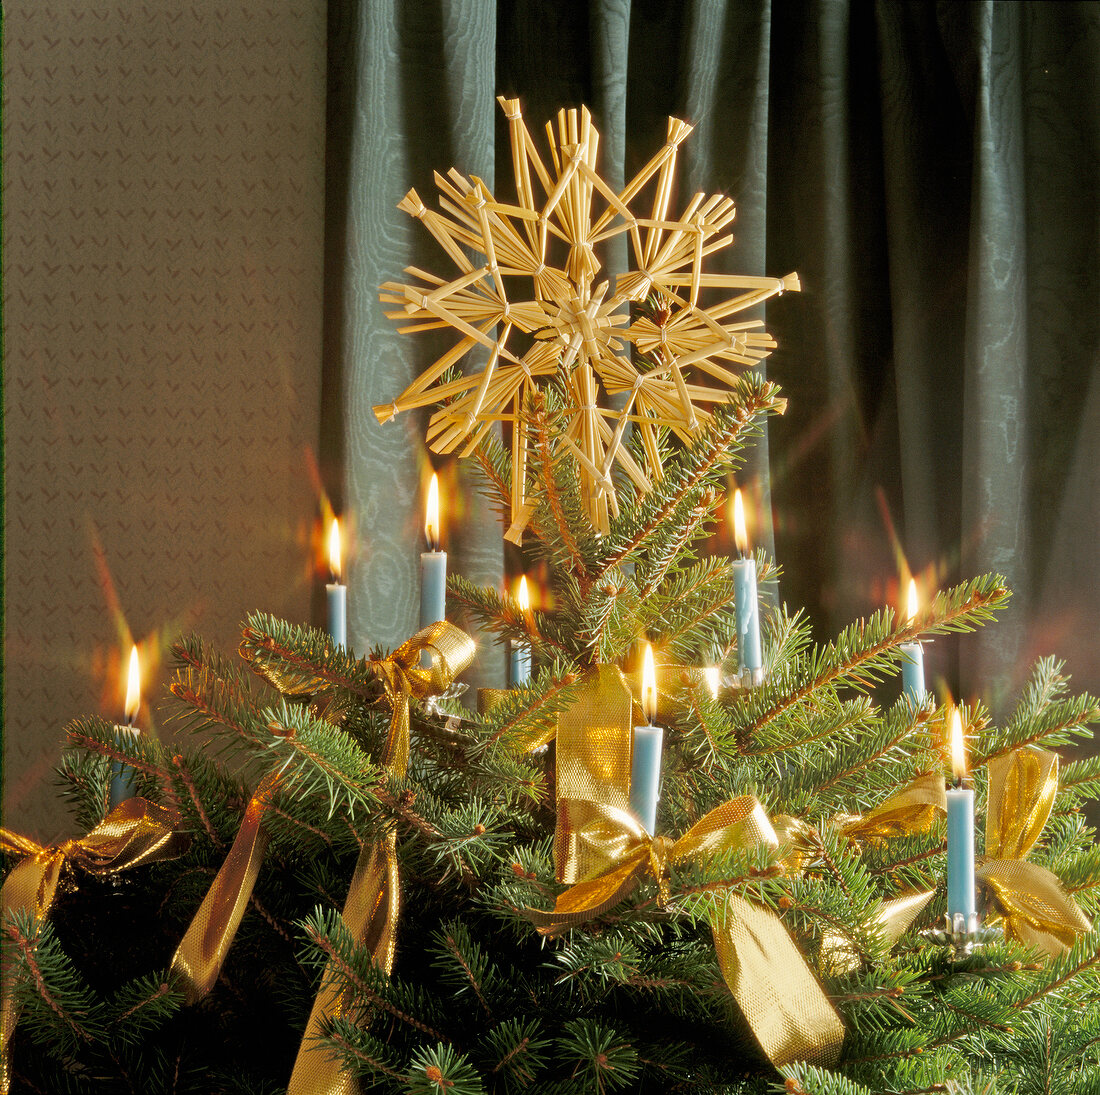 Strohstern als Christbaumspitze am Tannenbaum mit brennenden Kerzen